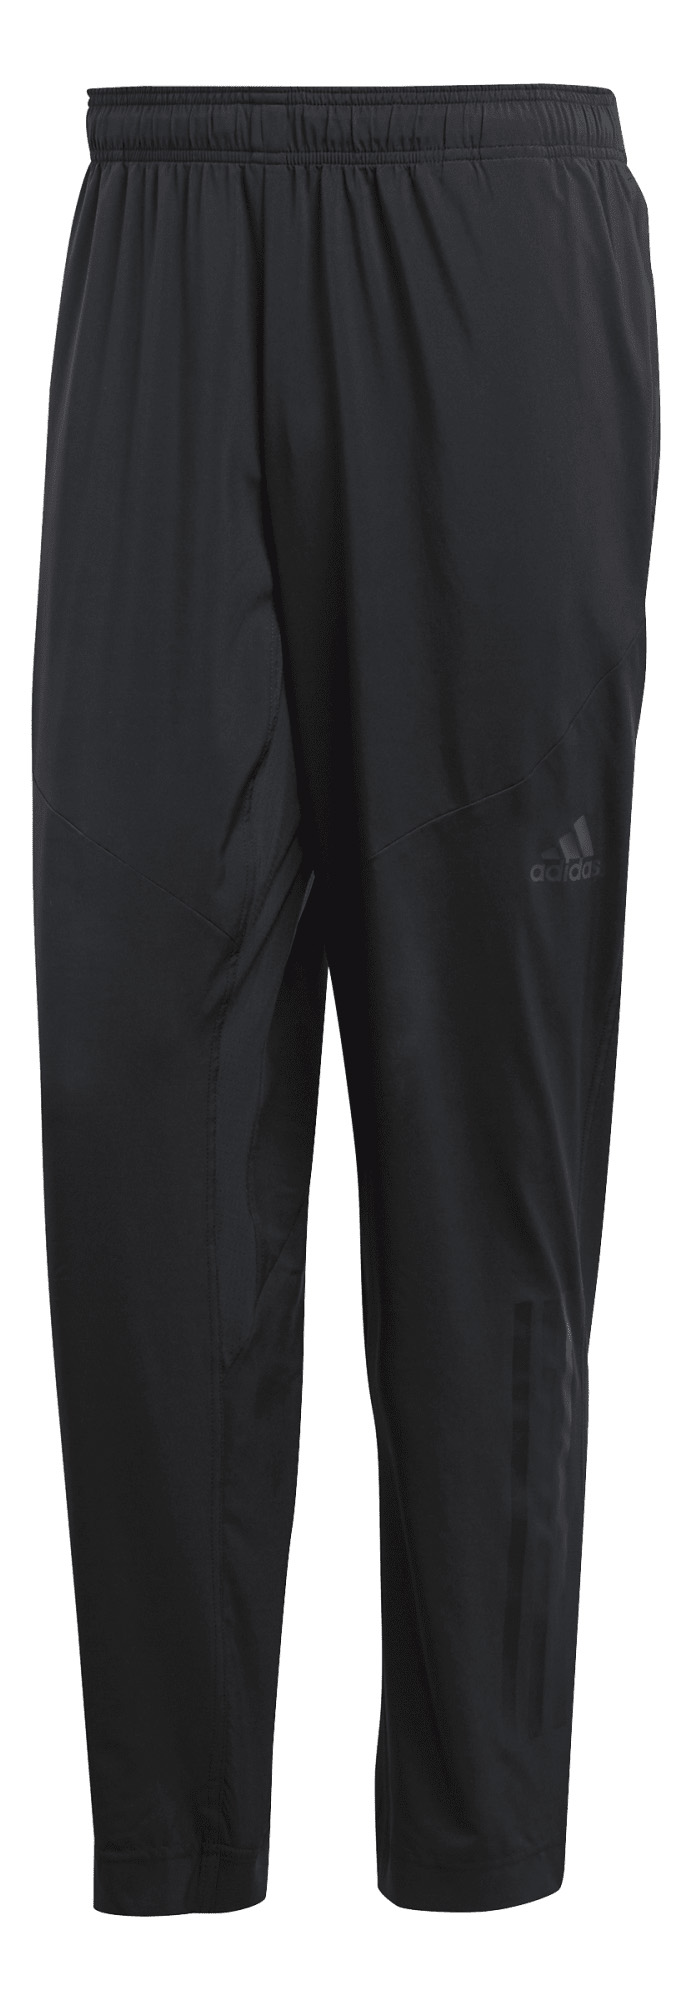 adidas Sportswear Workout Pant Climacool spodnie 506 S